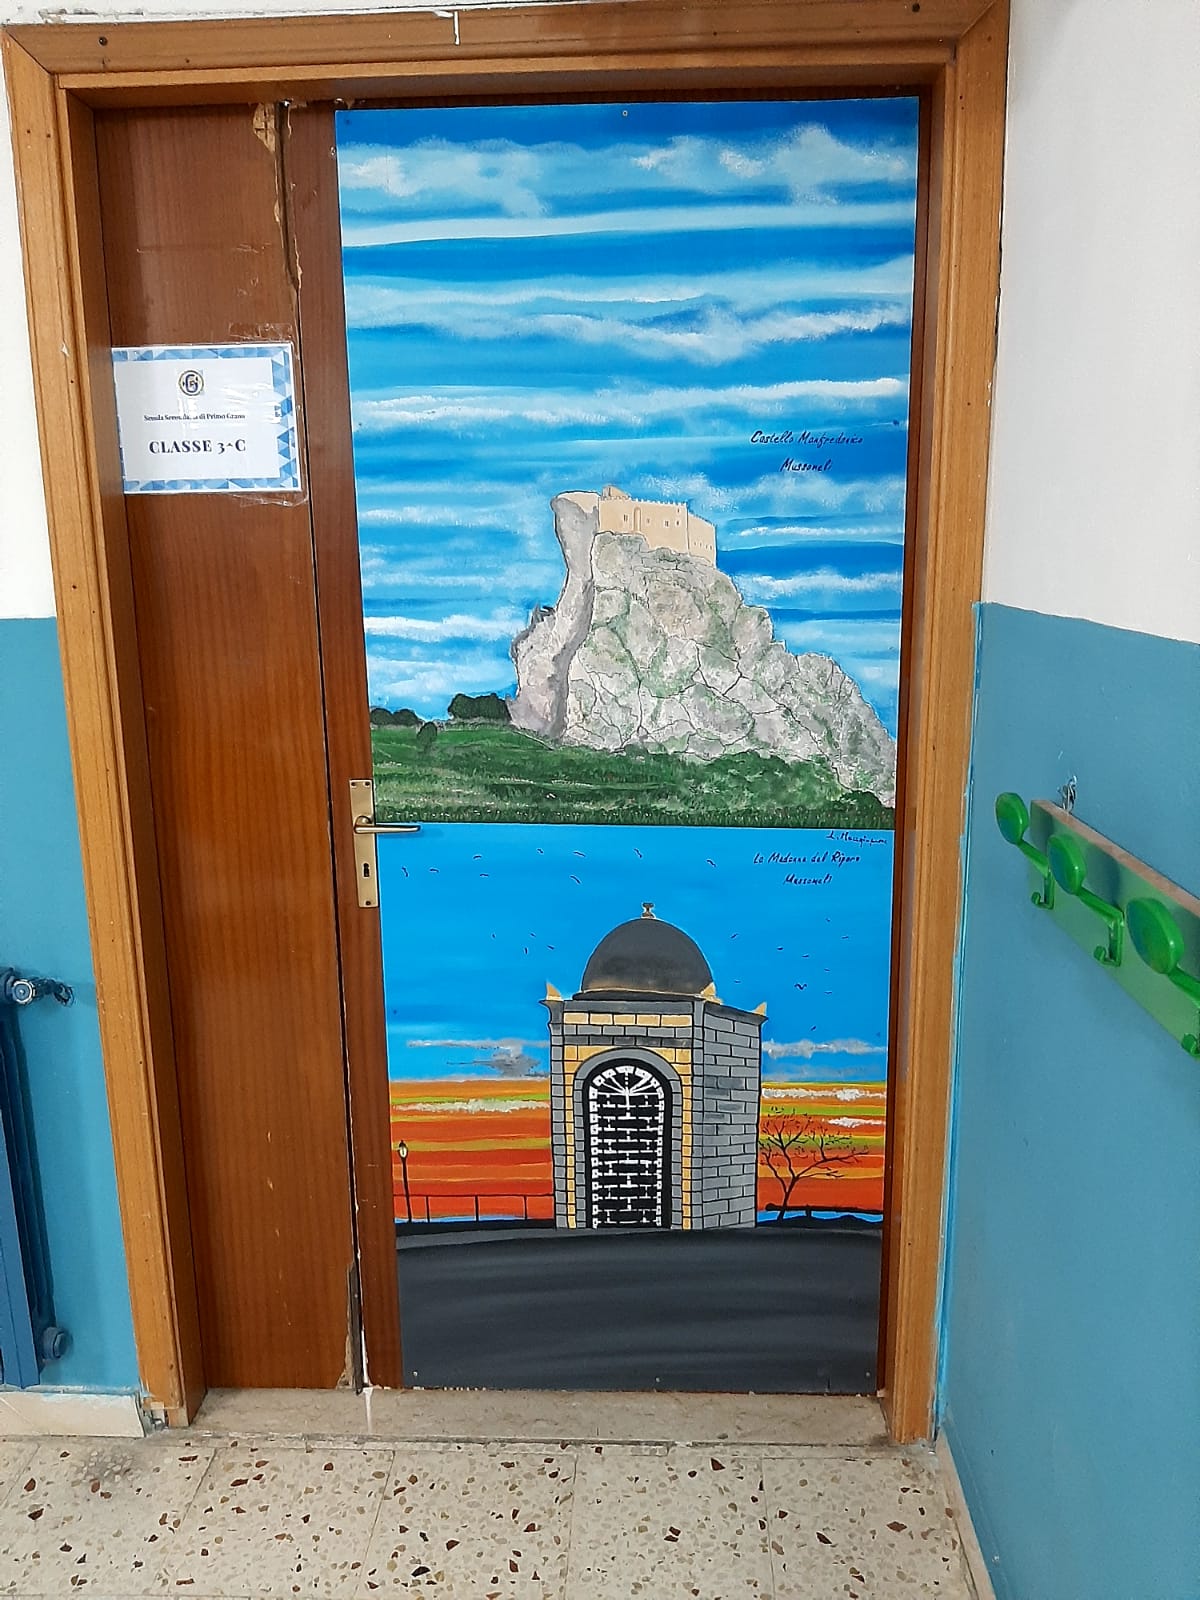 Mussomeli , Porte d’arte: aperture di luci colorate in spazi educativi